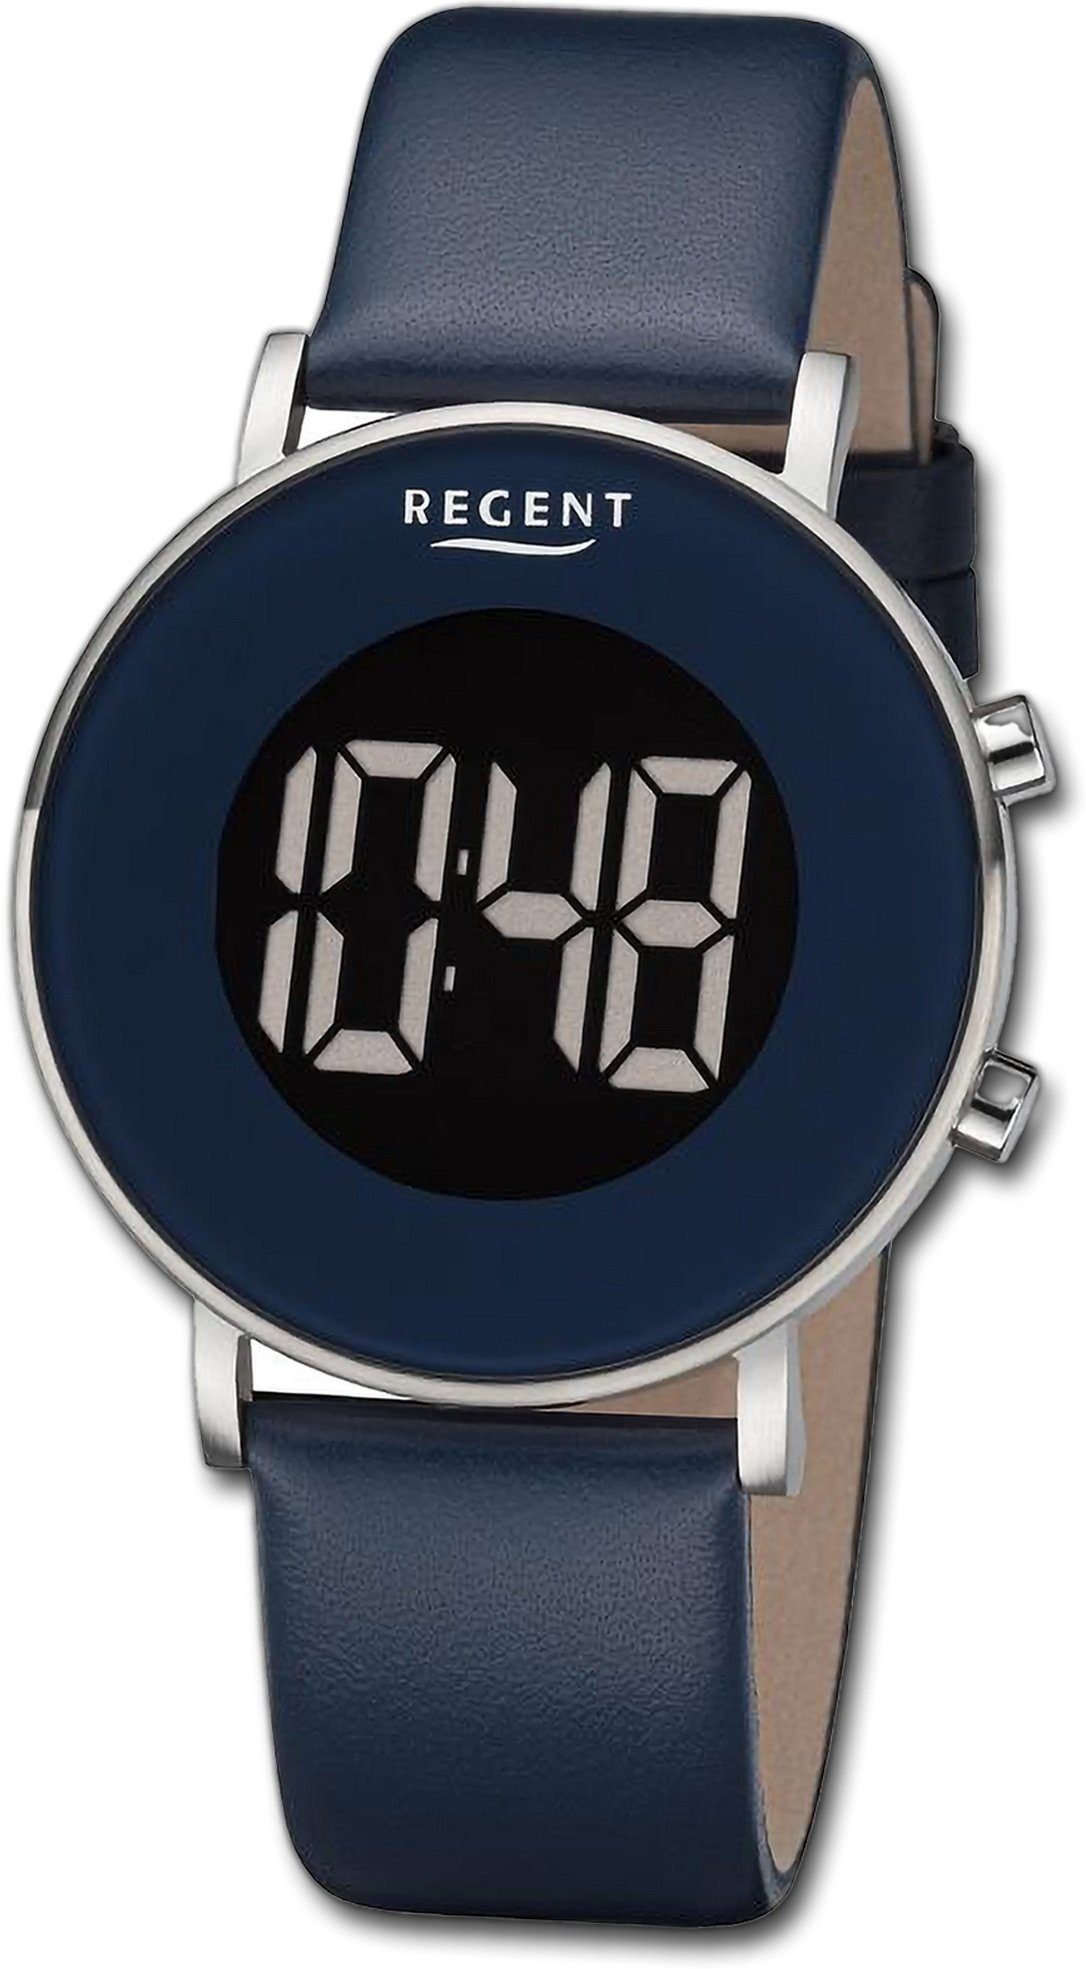 Regent Quarzuhr Regent Herren Armbanduhr Digital, Herrenuhr Lederarmband dunkelblau, rundes Gehäuse, groß (ca. 40mm)